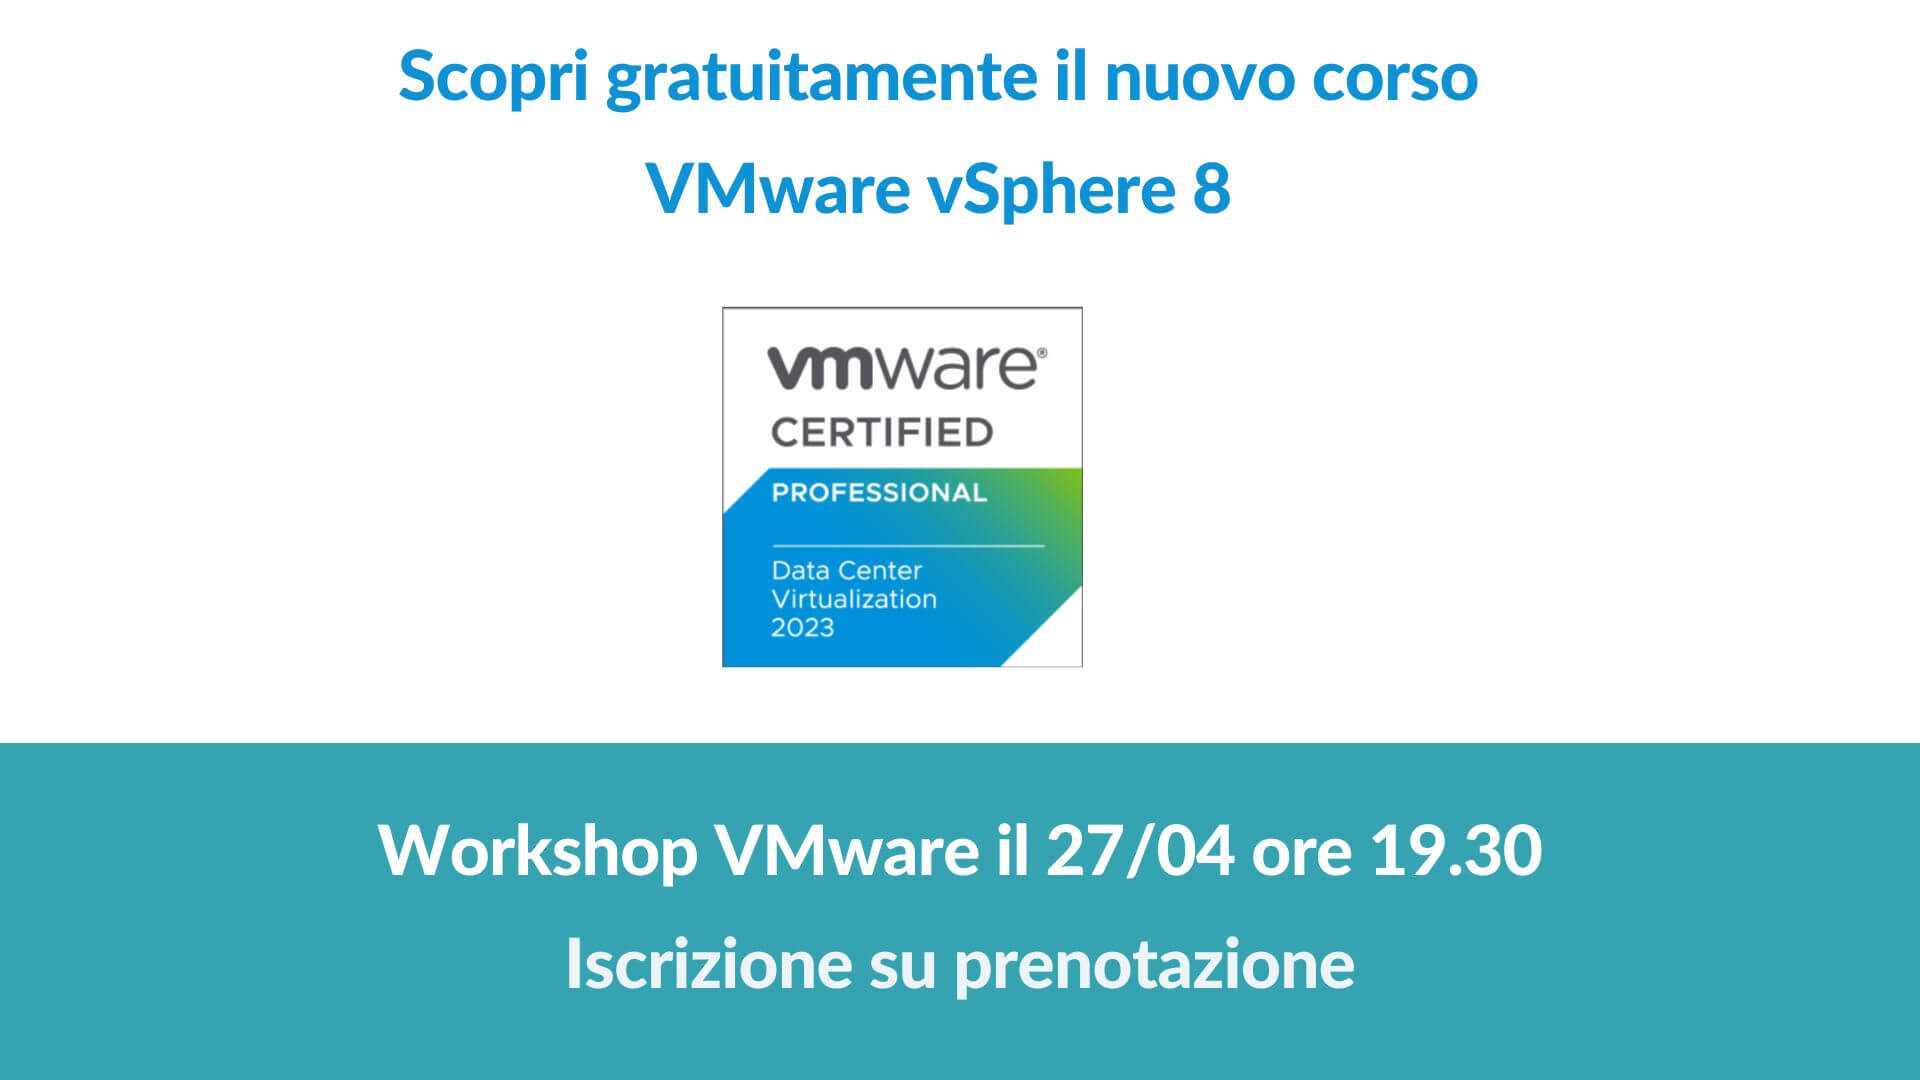 VMware vSphere 8 aggiornamento: workshop gratuito 